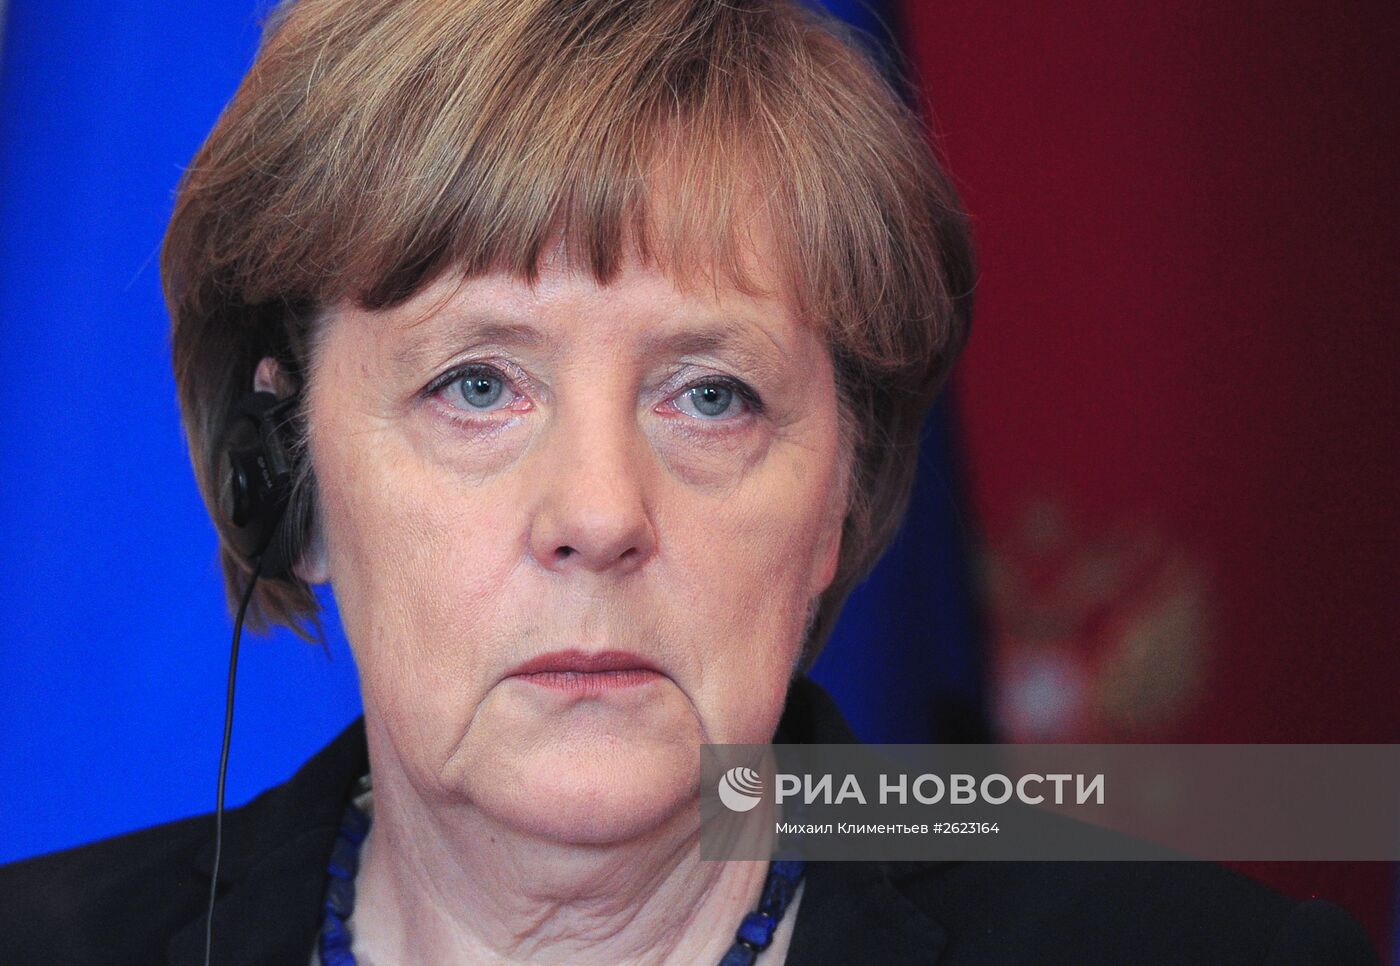 Совместная пресс-конференция президента РФ В.Путина и канцлера Германии А.Меркель